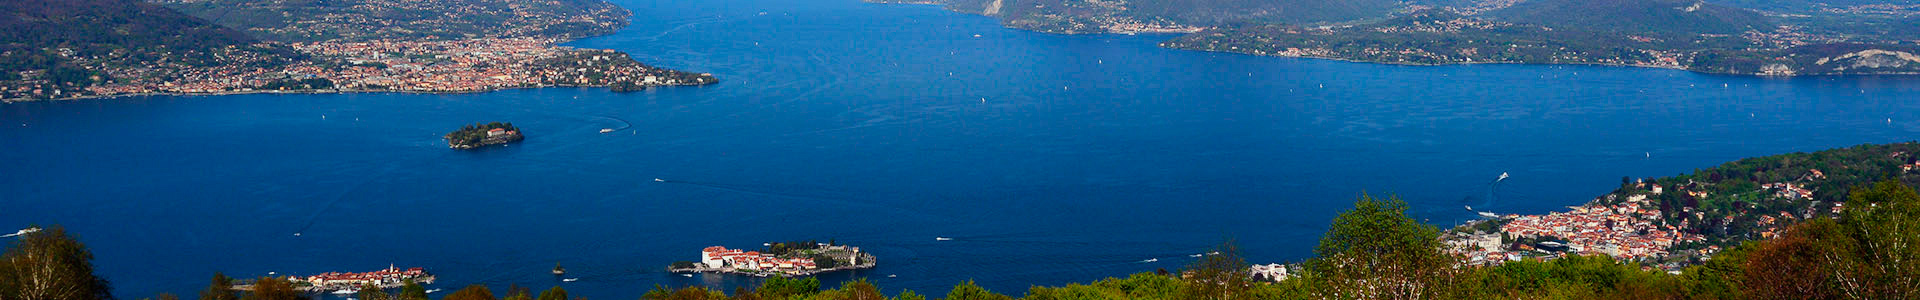 Summer Boats Consorzio Motoscafisti